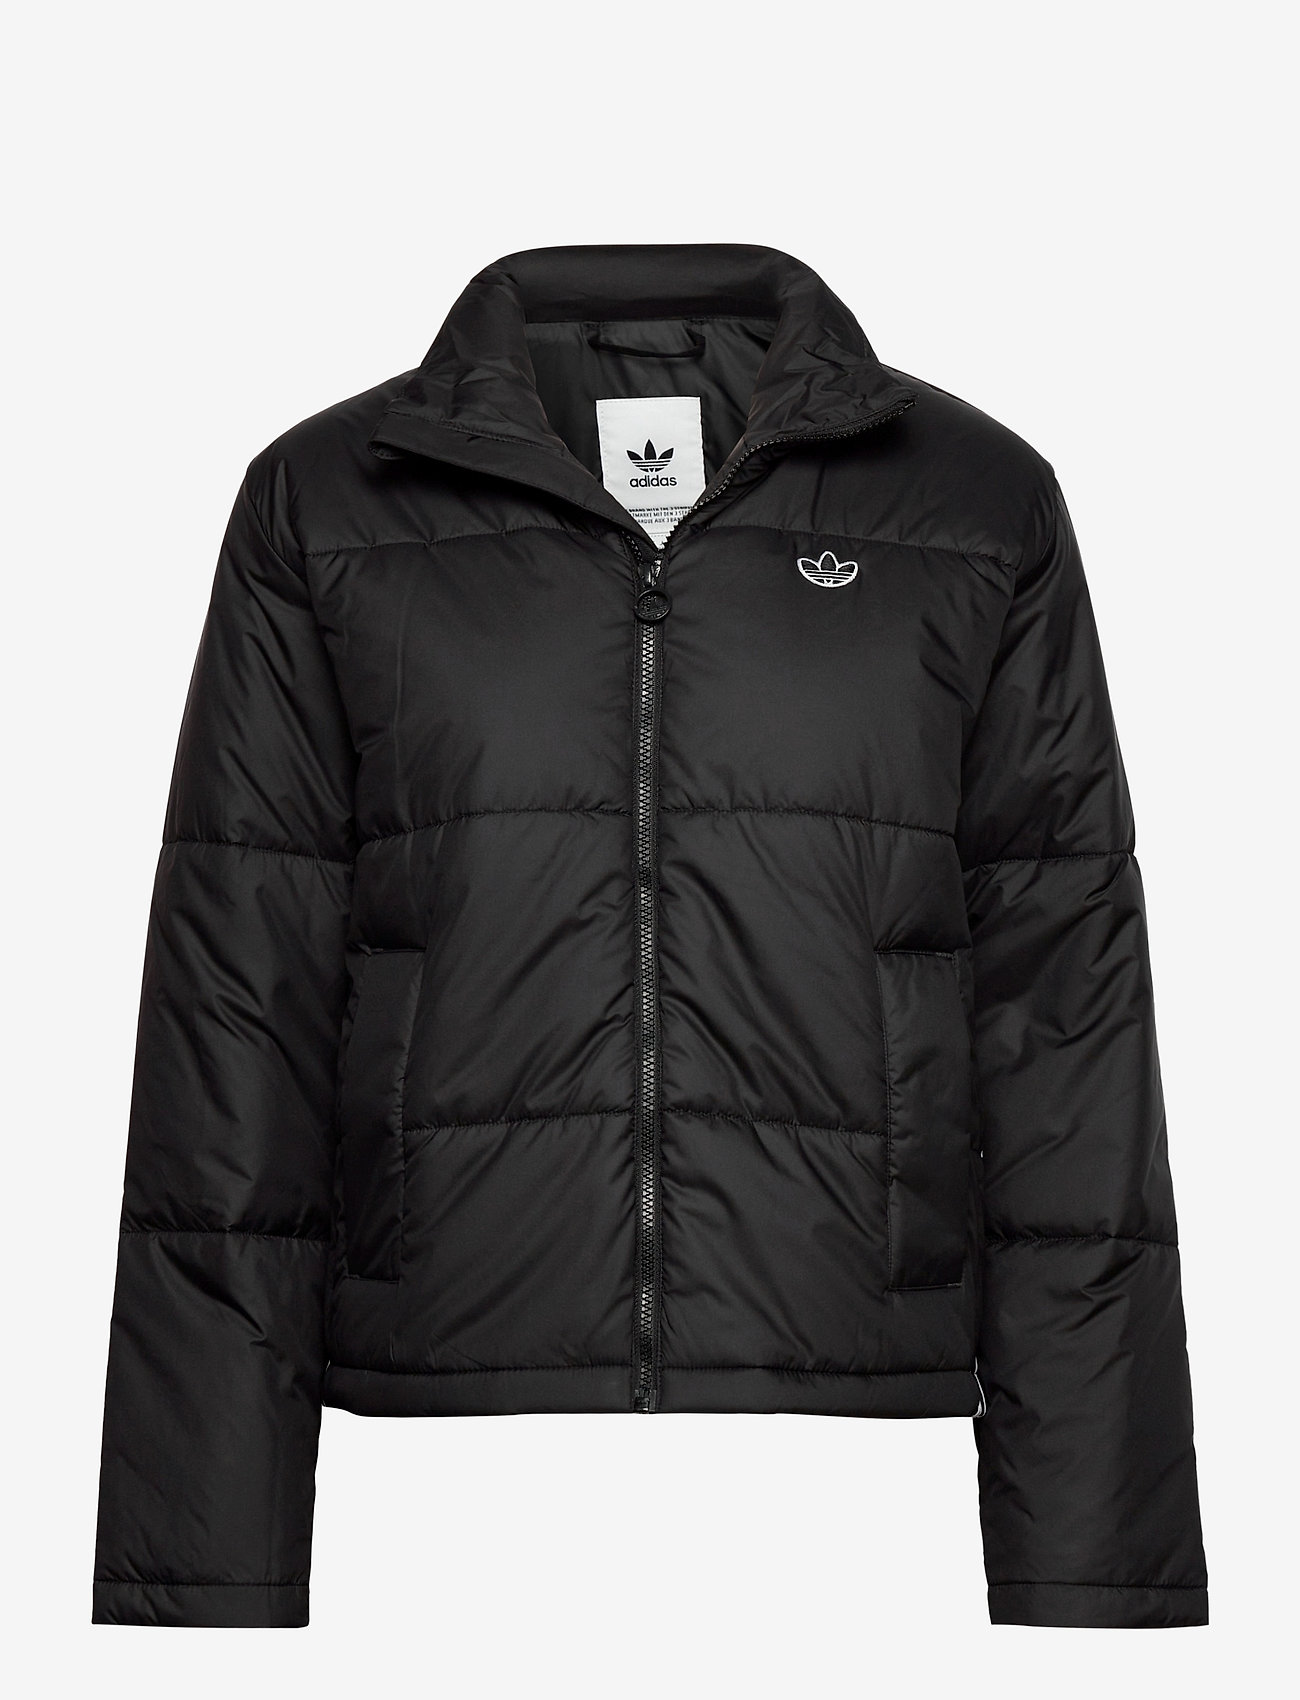 adidas Originals Short Puffer - Jackets & Coats | Boozt.com